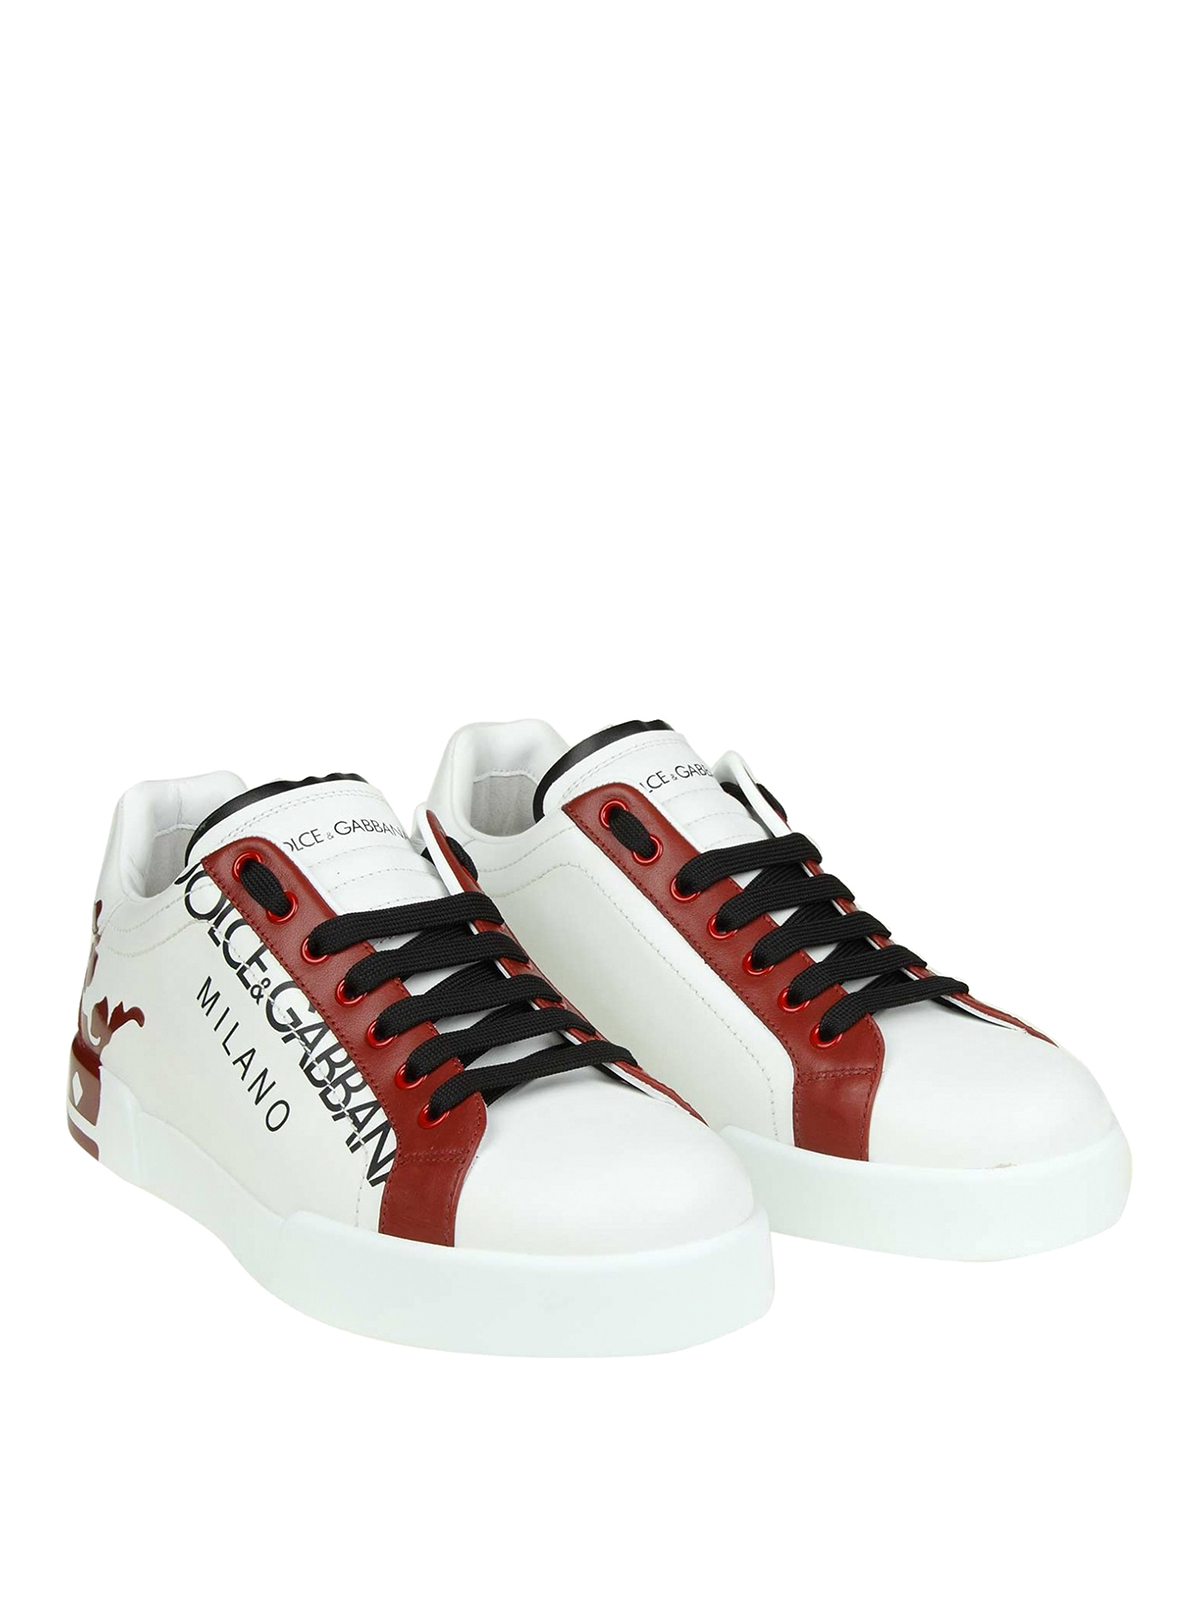 dolce & gabbana white red portofino sneakers